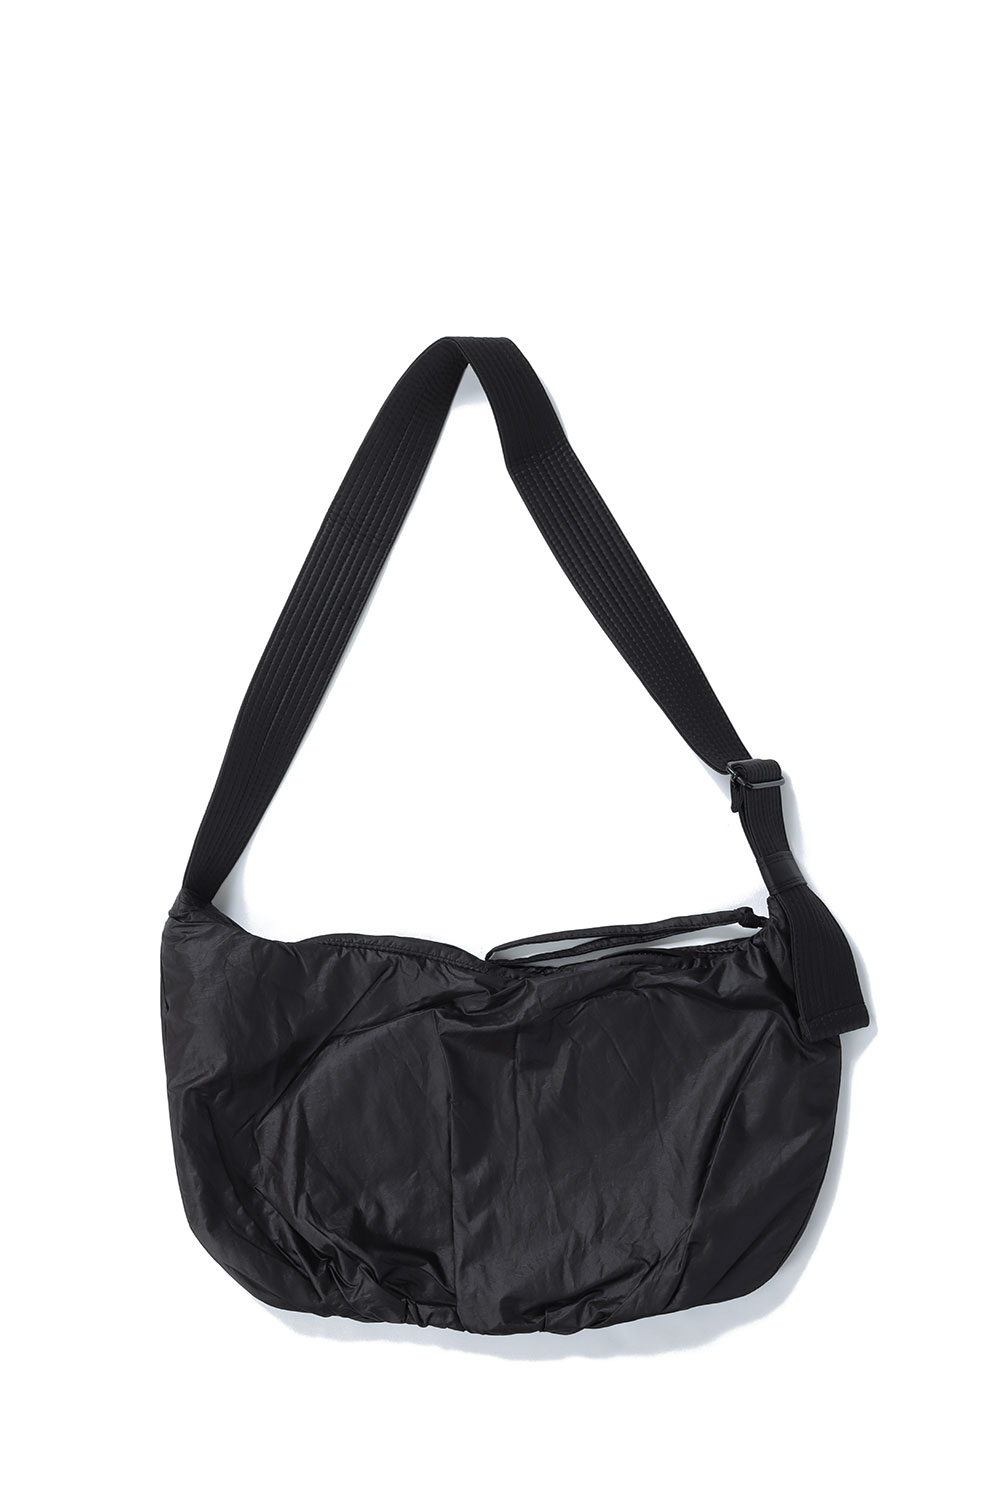 買い販促品 B349 TODAYFUL トゥデイフル Gather Shoulder Bag